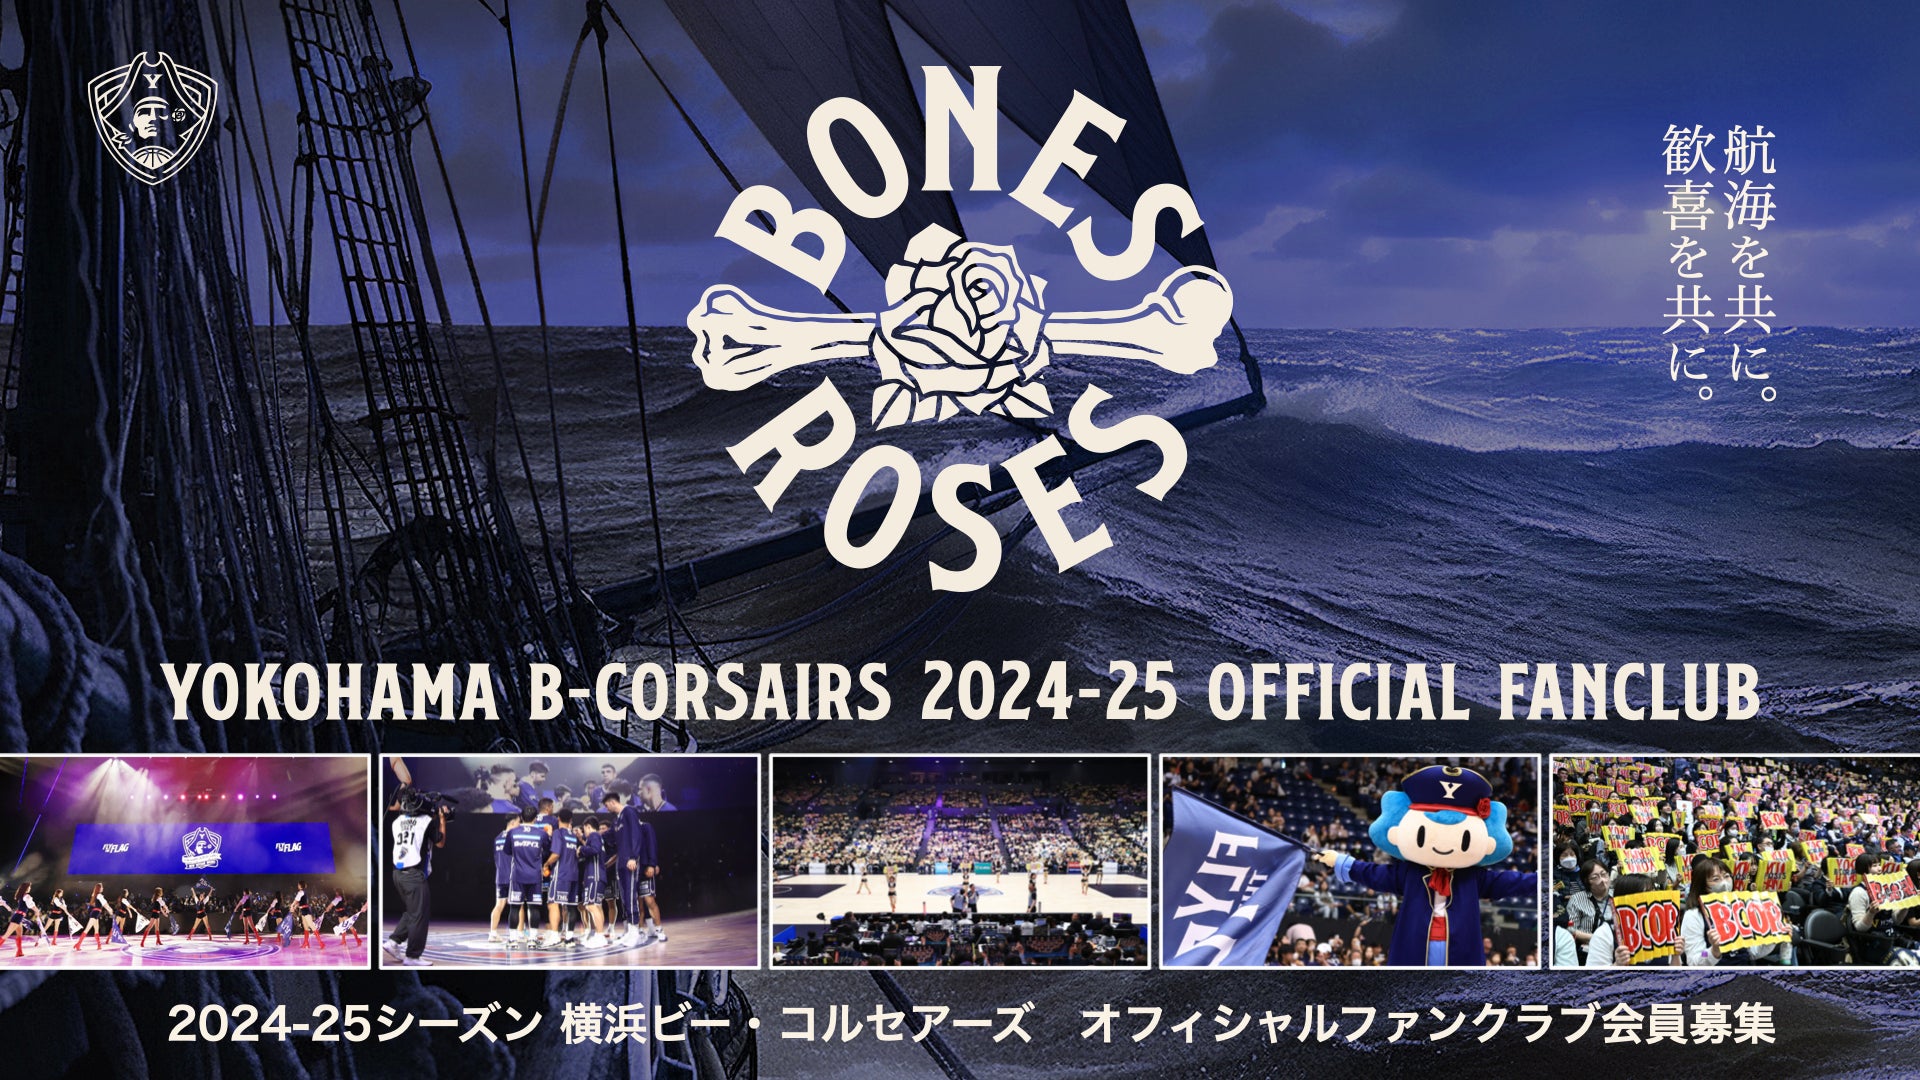 2024-25シーズン「BONES&ROSES」